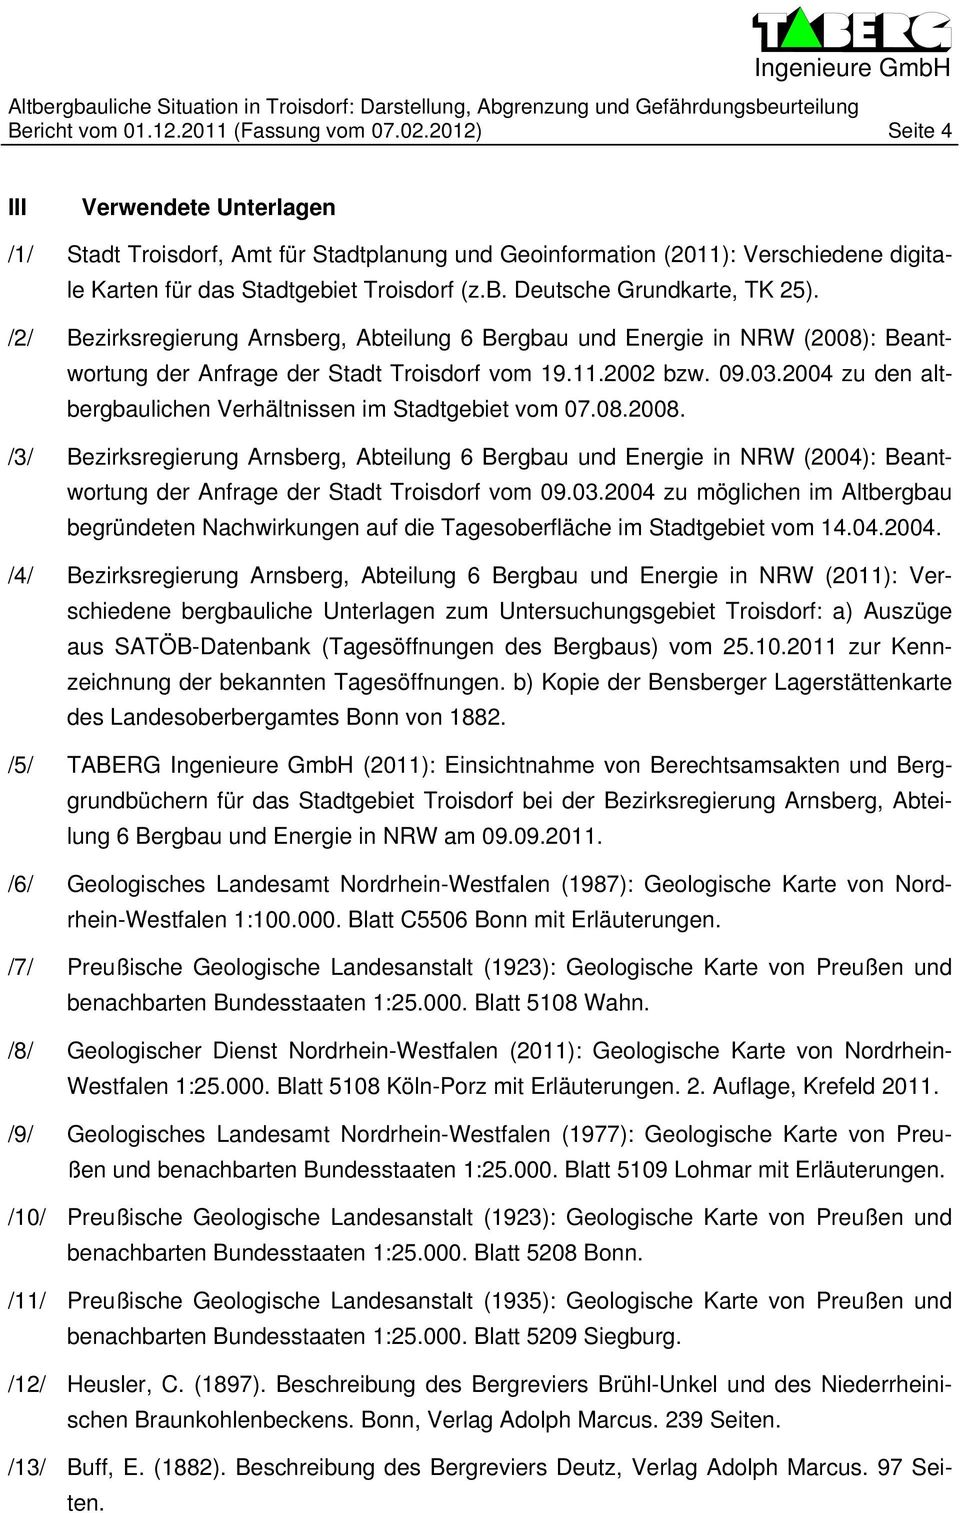 /2/ Bezirksregierung Arnsberg, Abteilung 6 Bergbau und Energie in NRW (2008): Beantwortung der Anfrage der Stadt Troisdorf vom 19.11.2002 bzw. 09.03.